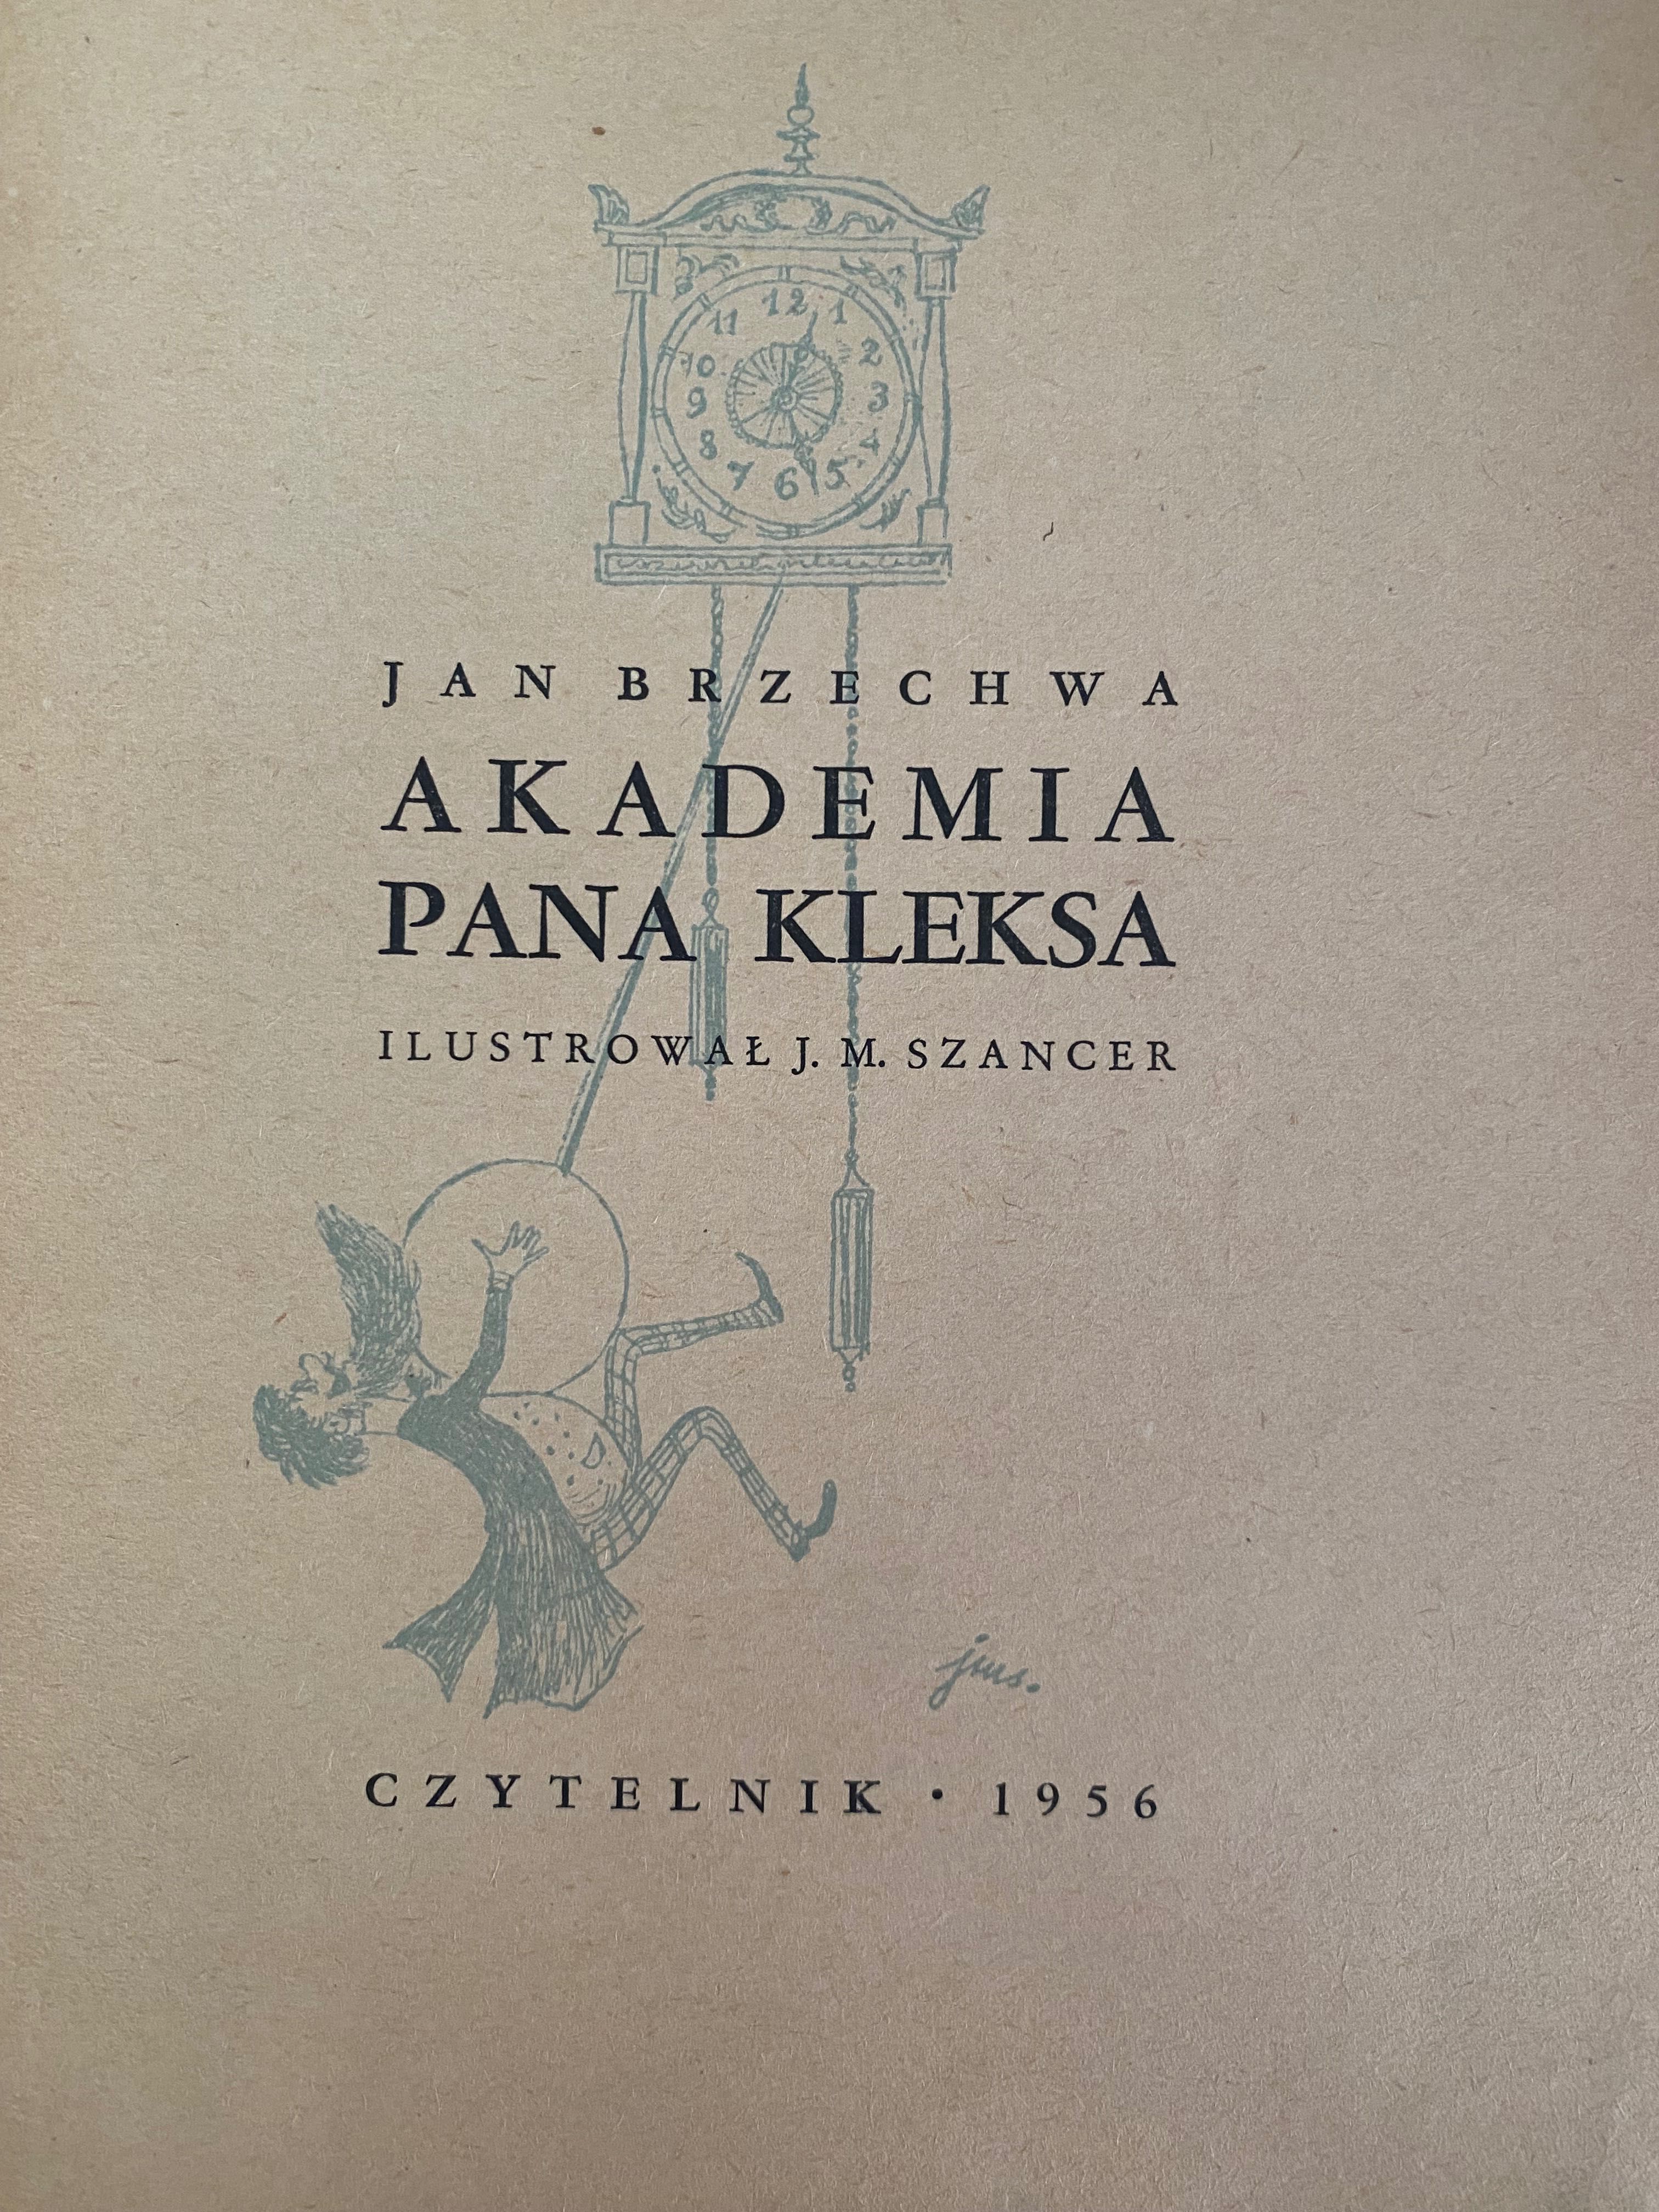 Jan Brzechwa, Akademia Pana Kleksa, 1956, Czytelnik